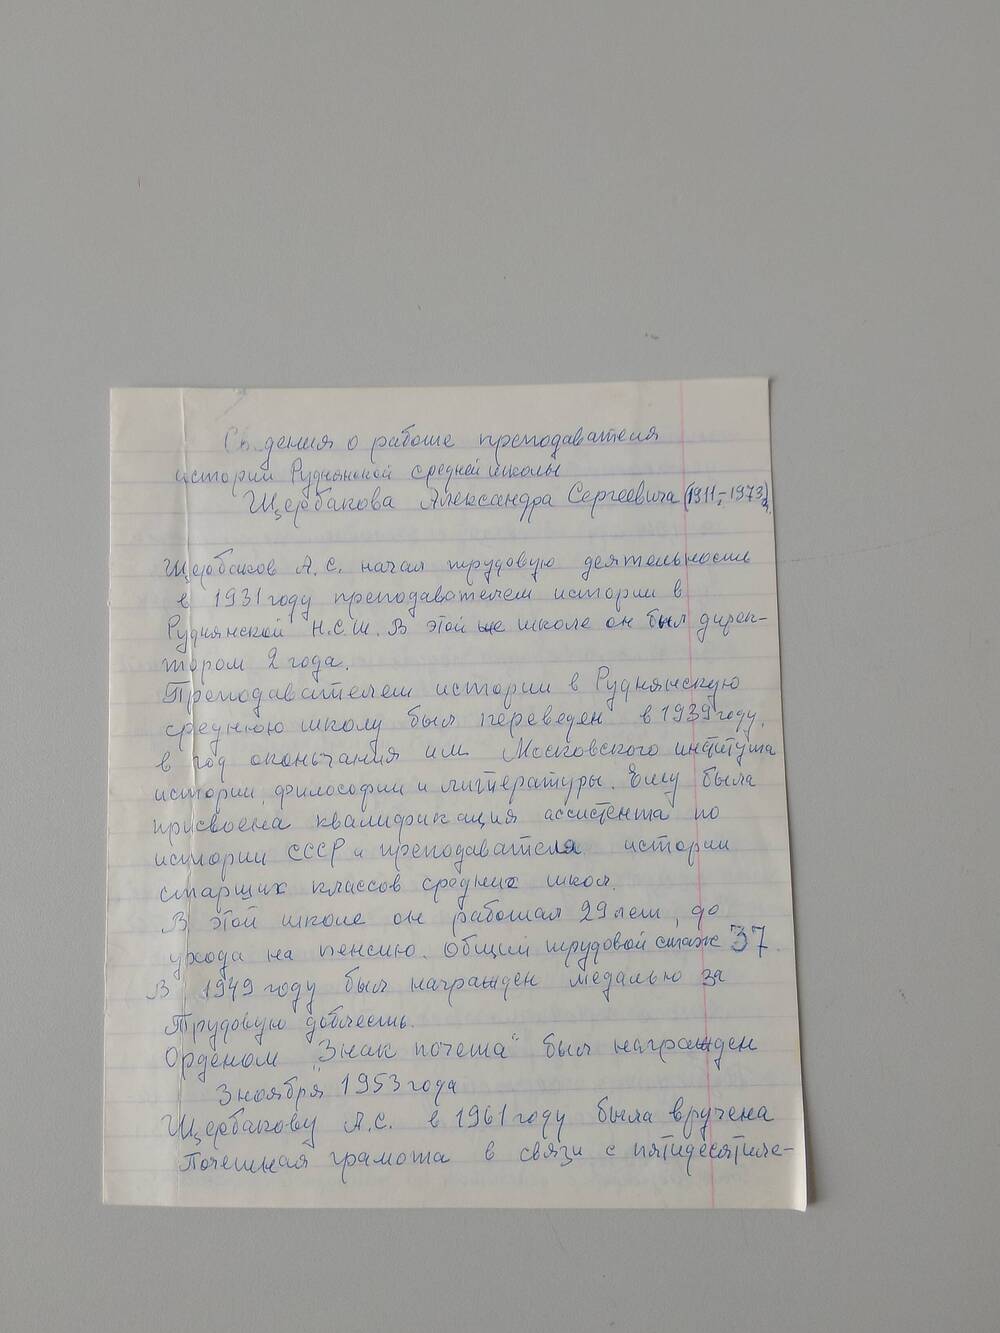 Автобиография Щербакова Александра Сергеевича